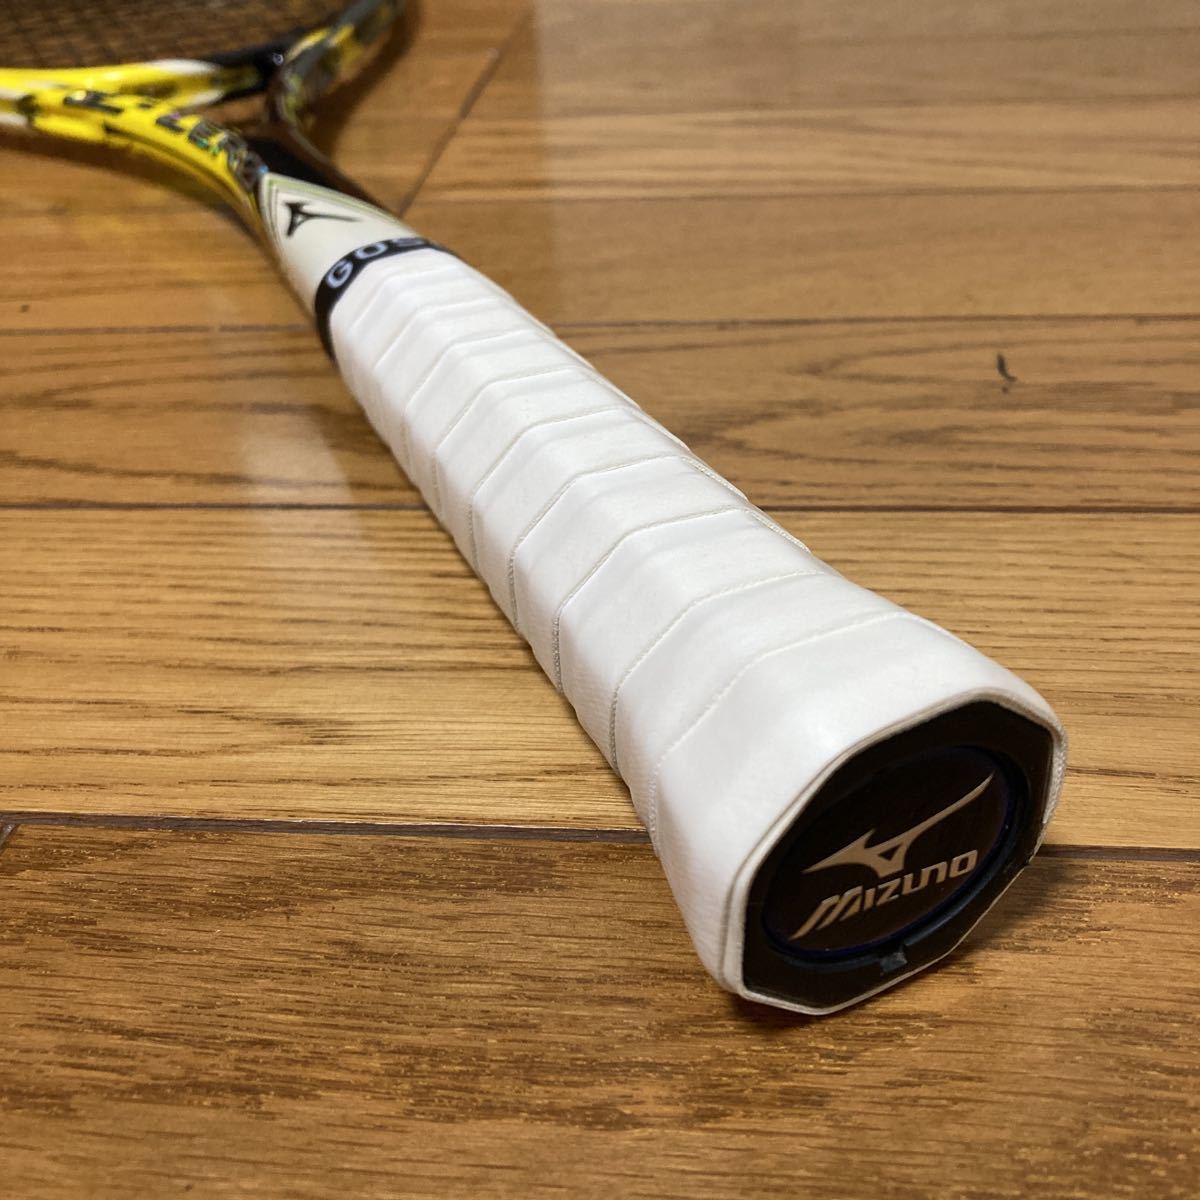 軟式テニスラケット ソフトテニスラケット MIZUNO ミズノ XYST ジスト XYST Z-ZERO 0U